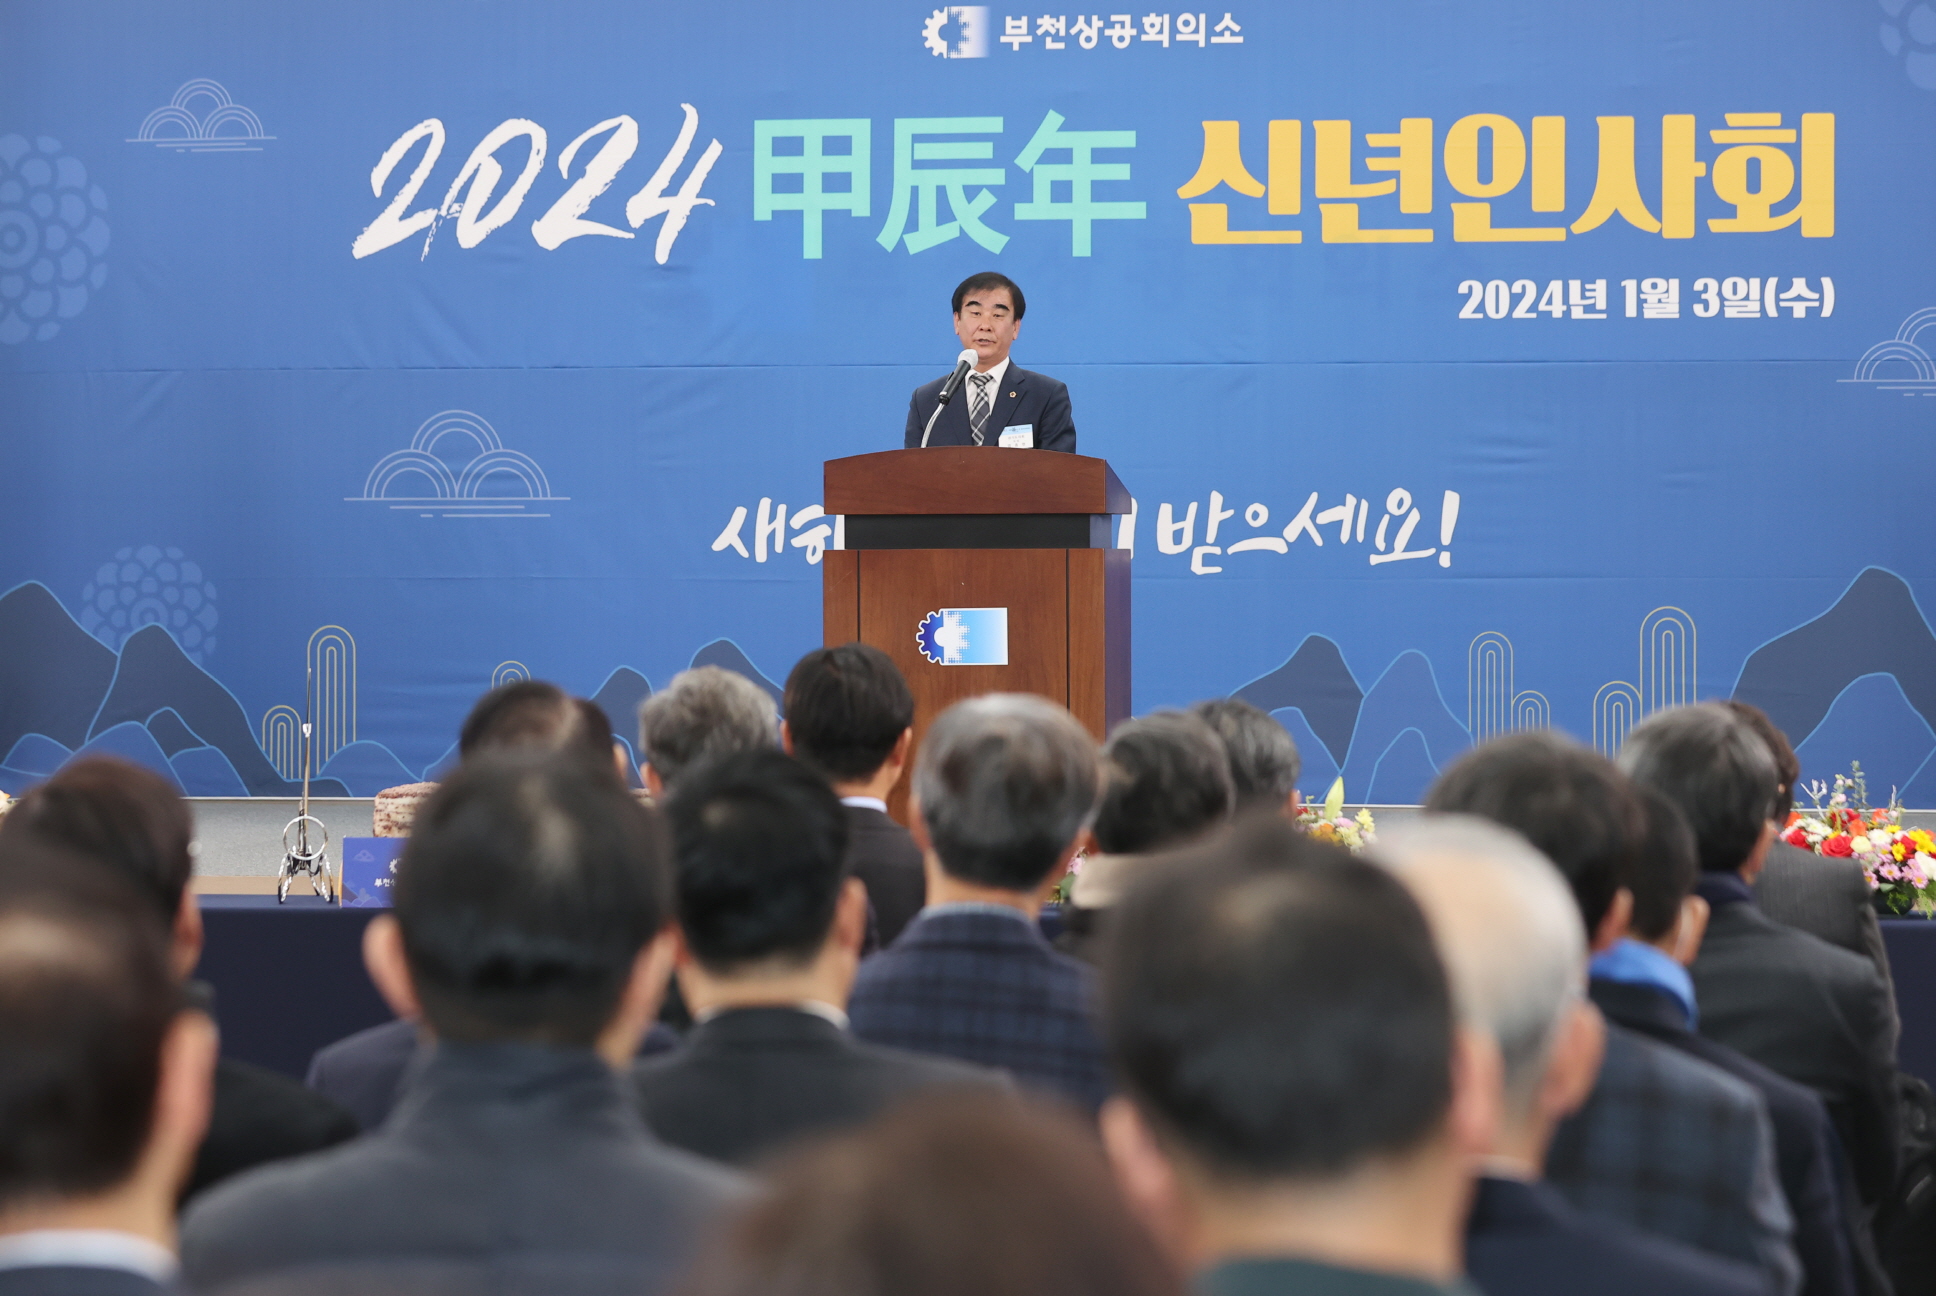 염종현 경기도의회 의장 부천상공회의소 신년인사회 참석 